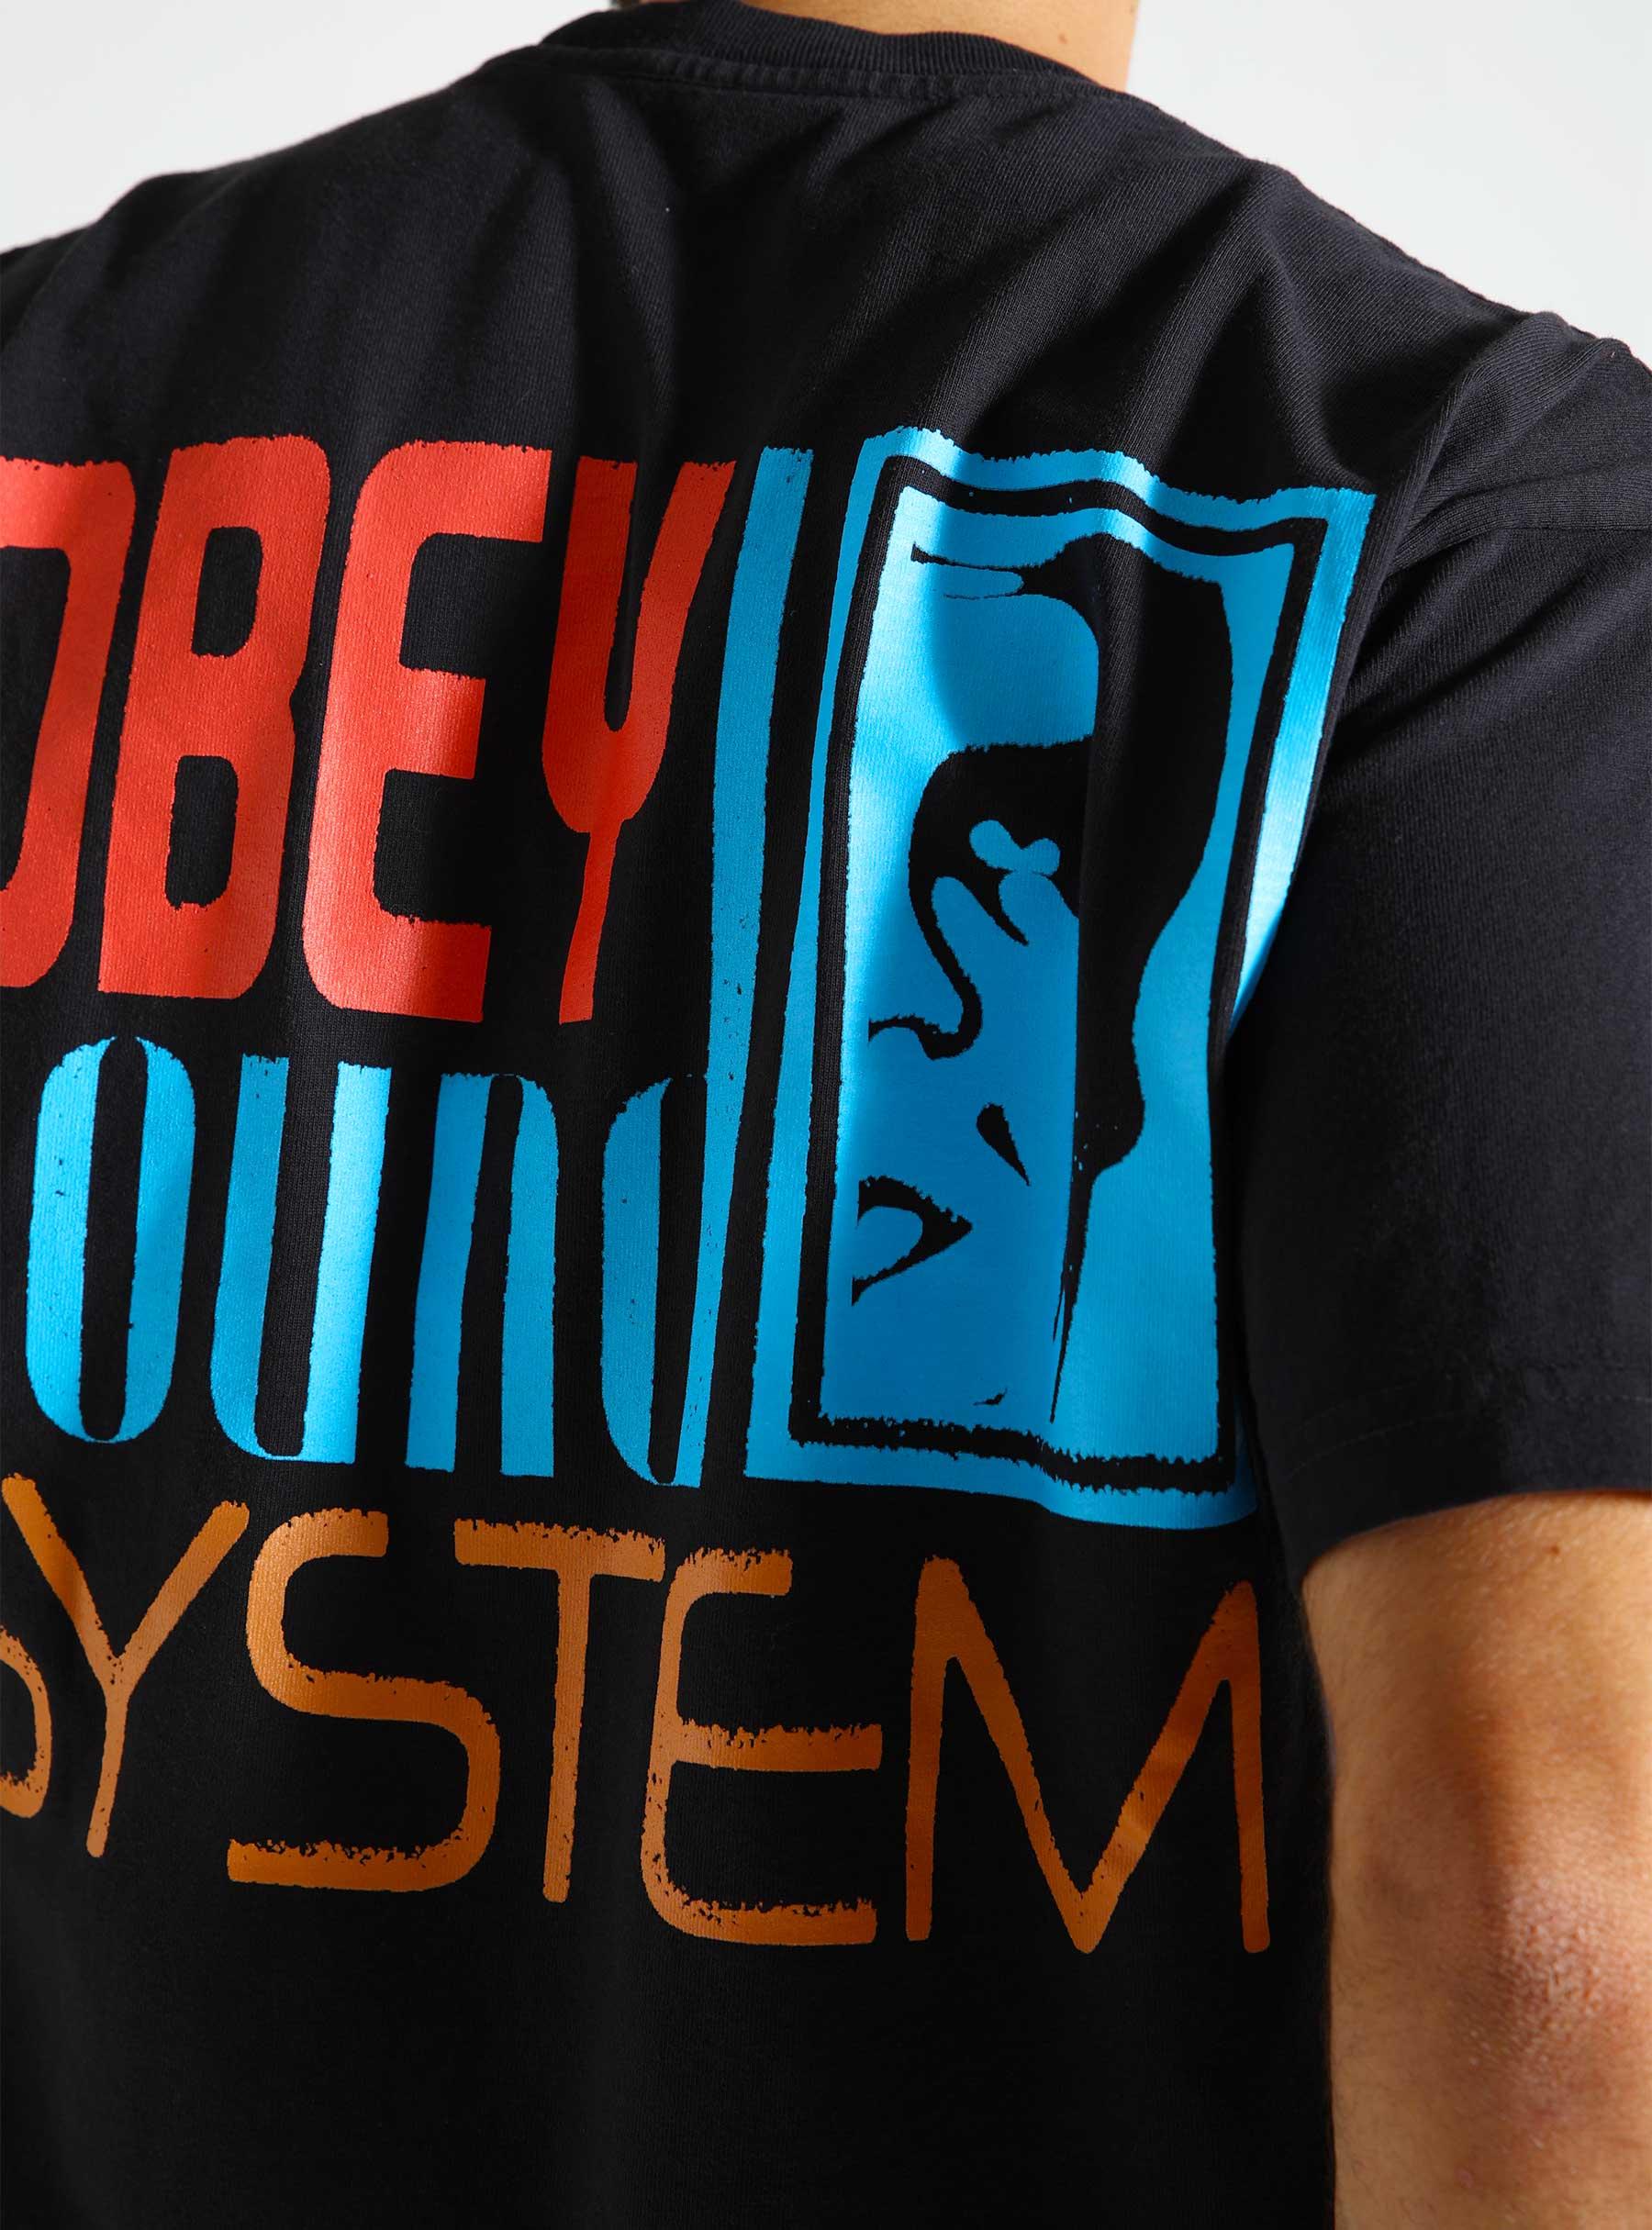 Obey Sound System T-Shirt Vintage black 166913755-VBL